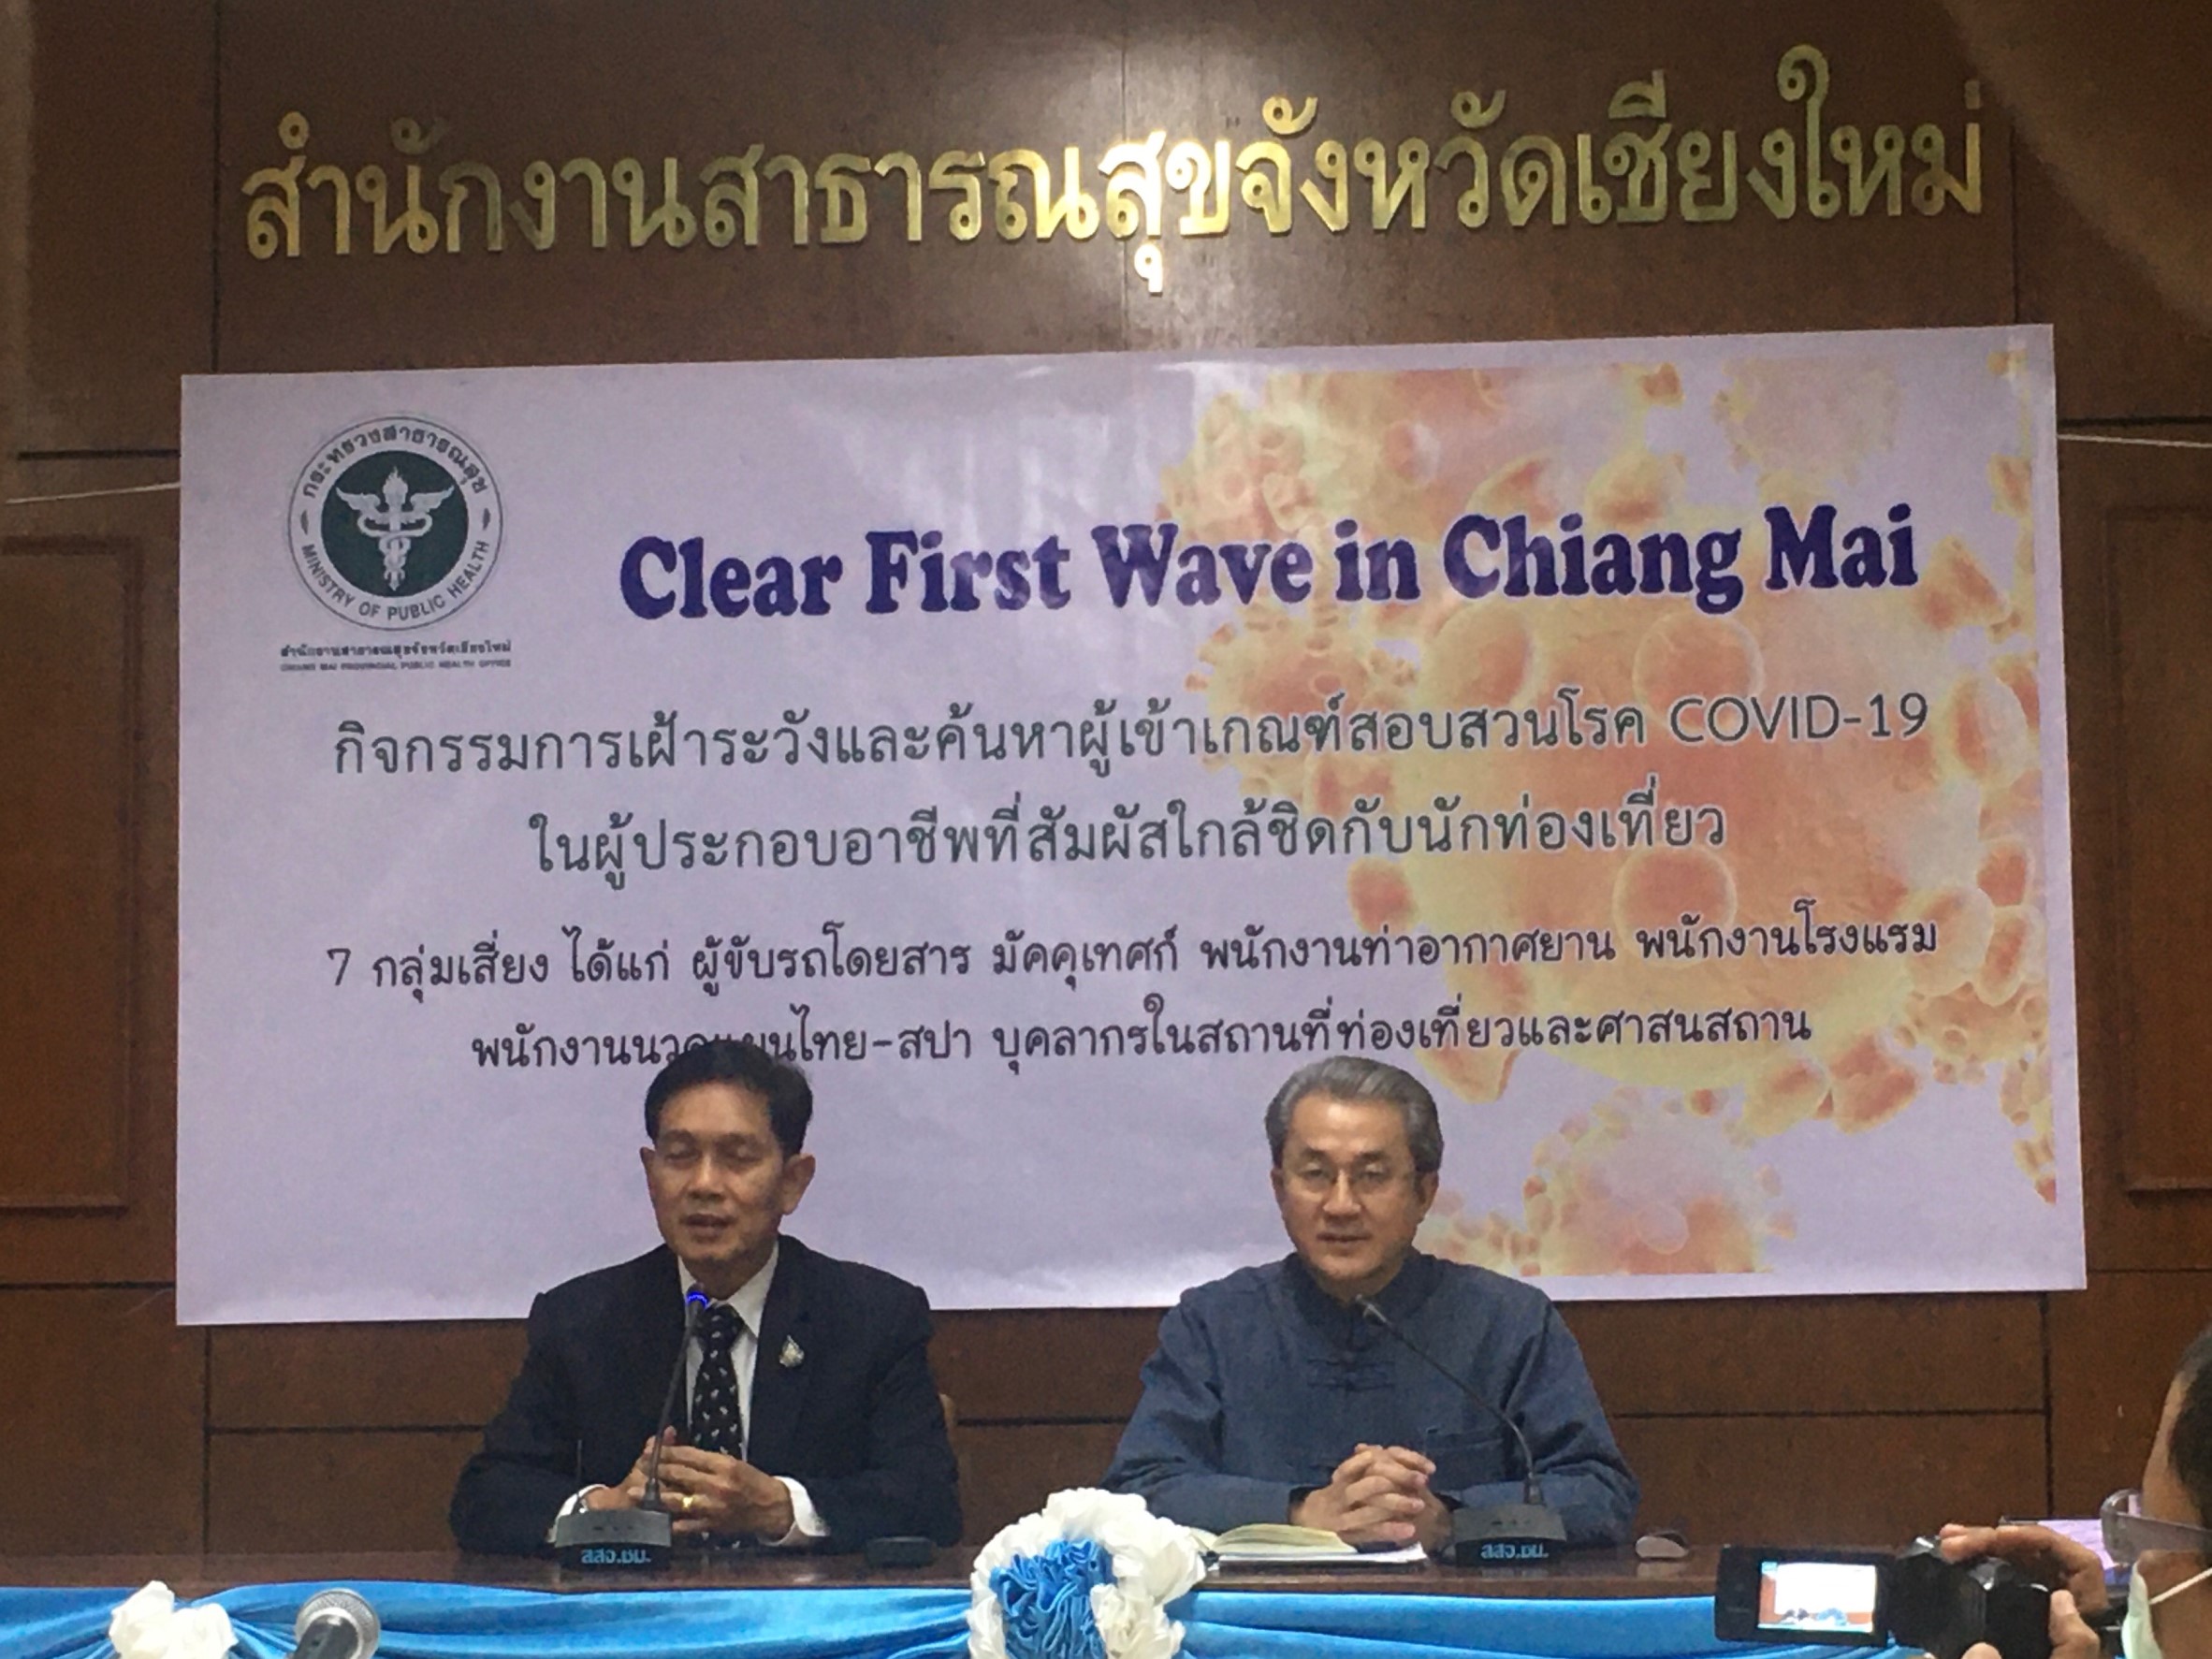 จังหวัดเชียงใหม่จัดกิจกรรม Clear First Wave in Chiang Mai กิจกรรมการเฝ้าระวังและค้นหาผู้เข้าเกณฑ์สอบสวนโรค COVID-19 ในผู้ประกอบอาชีพที่สัมผัสใกล้ชิดกับนักท่องเที่ยว